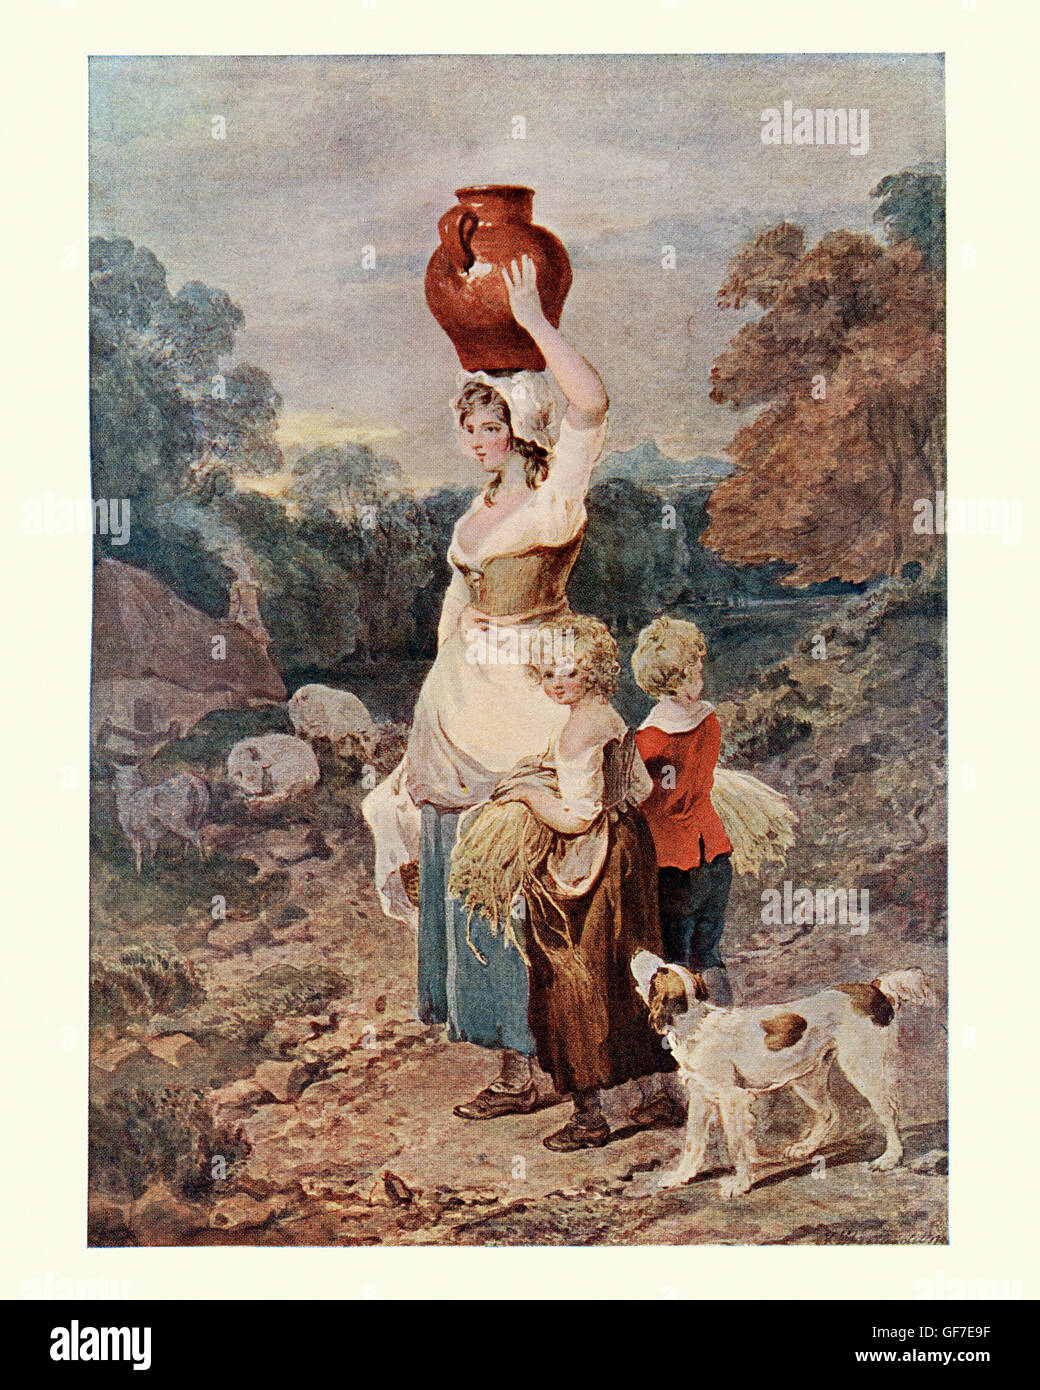 Les Glaneurs, après l'aquarelle de Francis Wheatley painter. Le glanage est l'acte de collecter les restes de cultures des champs des agriculteurs. 18e siècle Banque D'Images